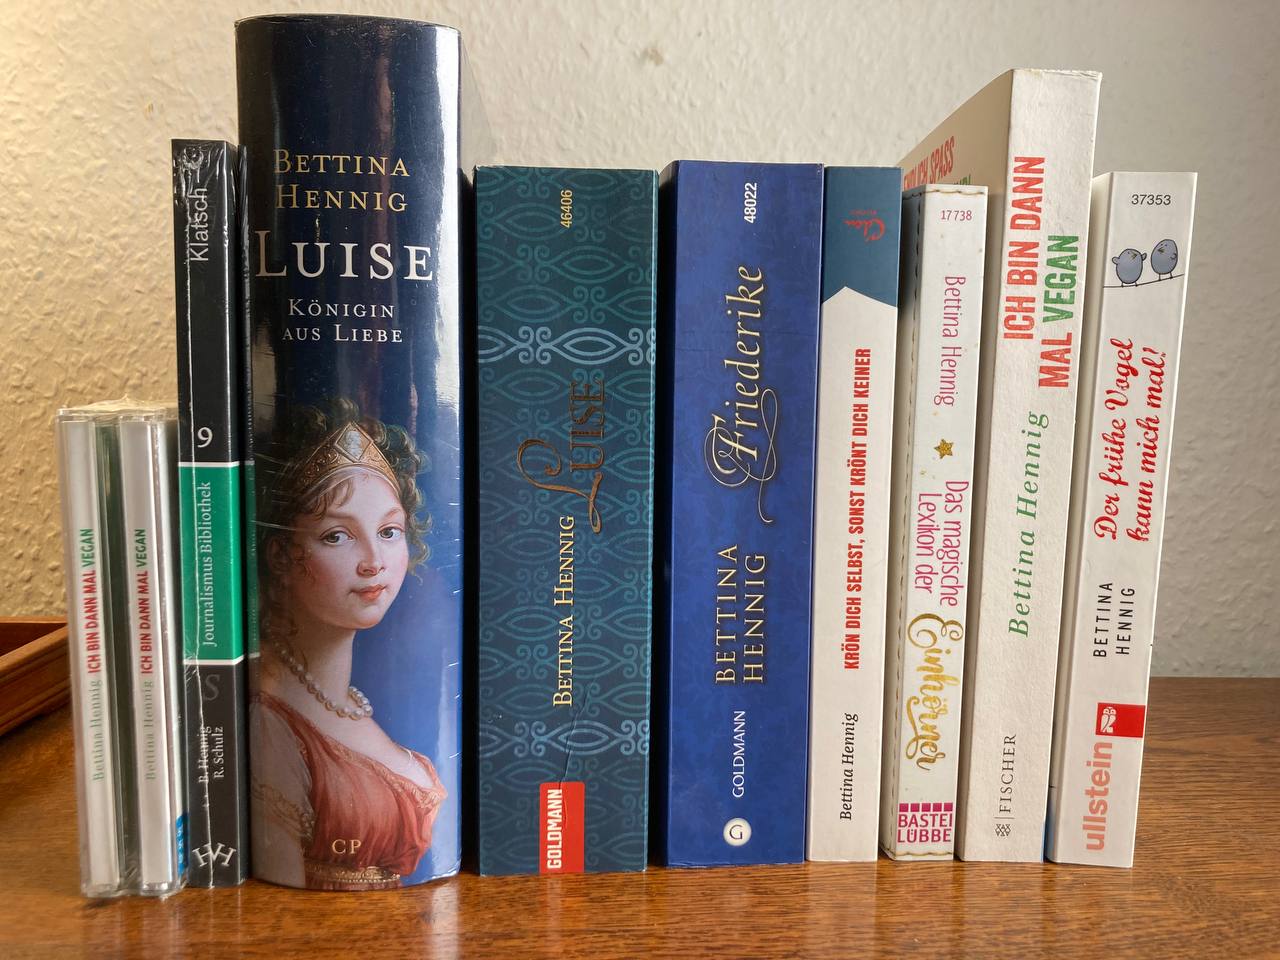 Das Bild zeigt neun Bücher und ein Hörbuch hochkant aufgestellt vor einer weißen Wand. Das sind die Bücher, die Bettina Hennig geschreiben hat.